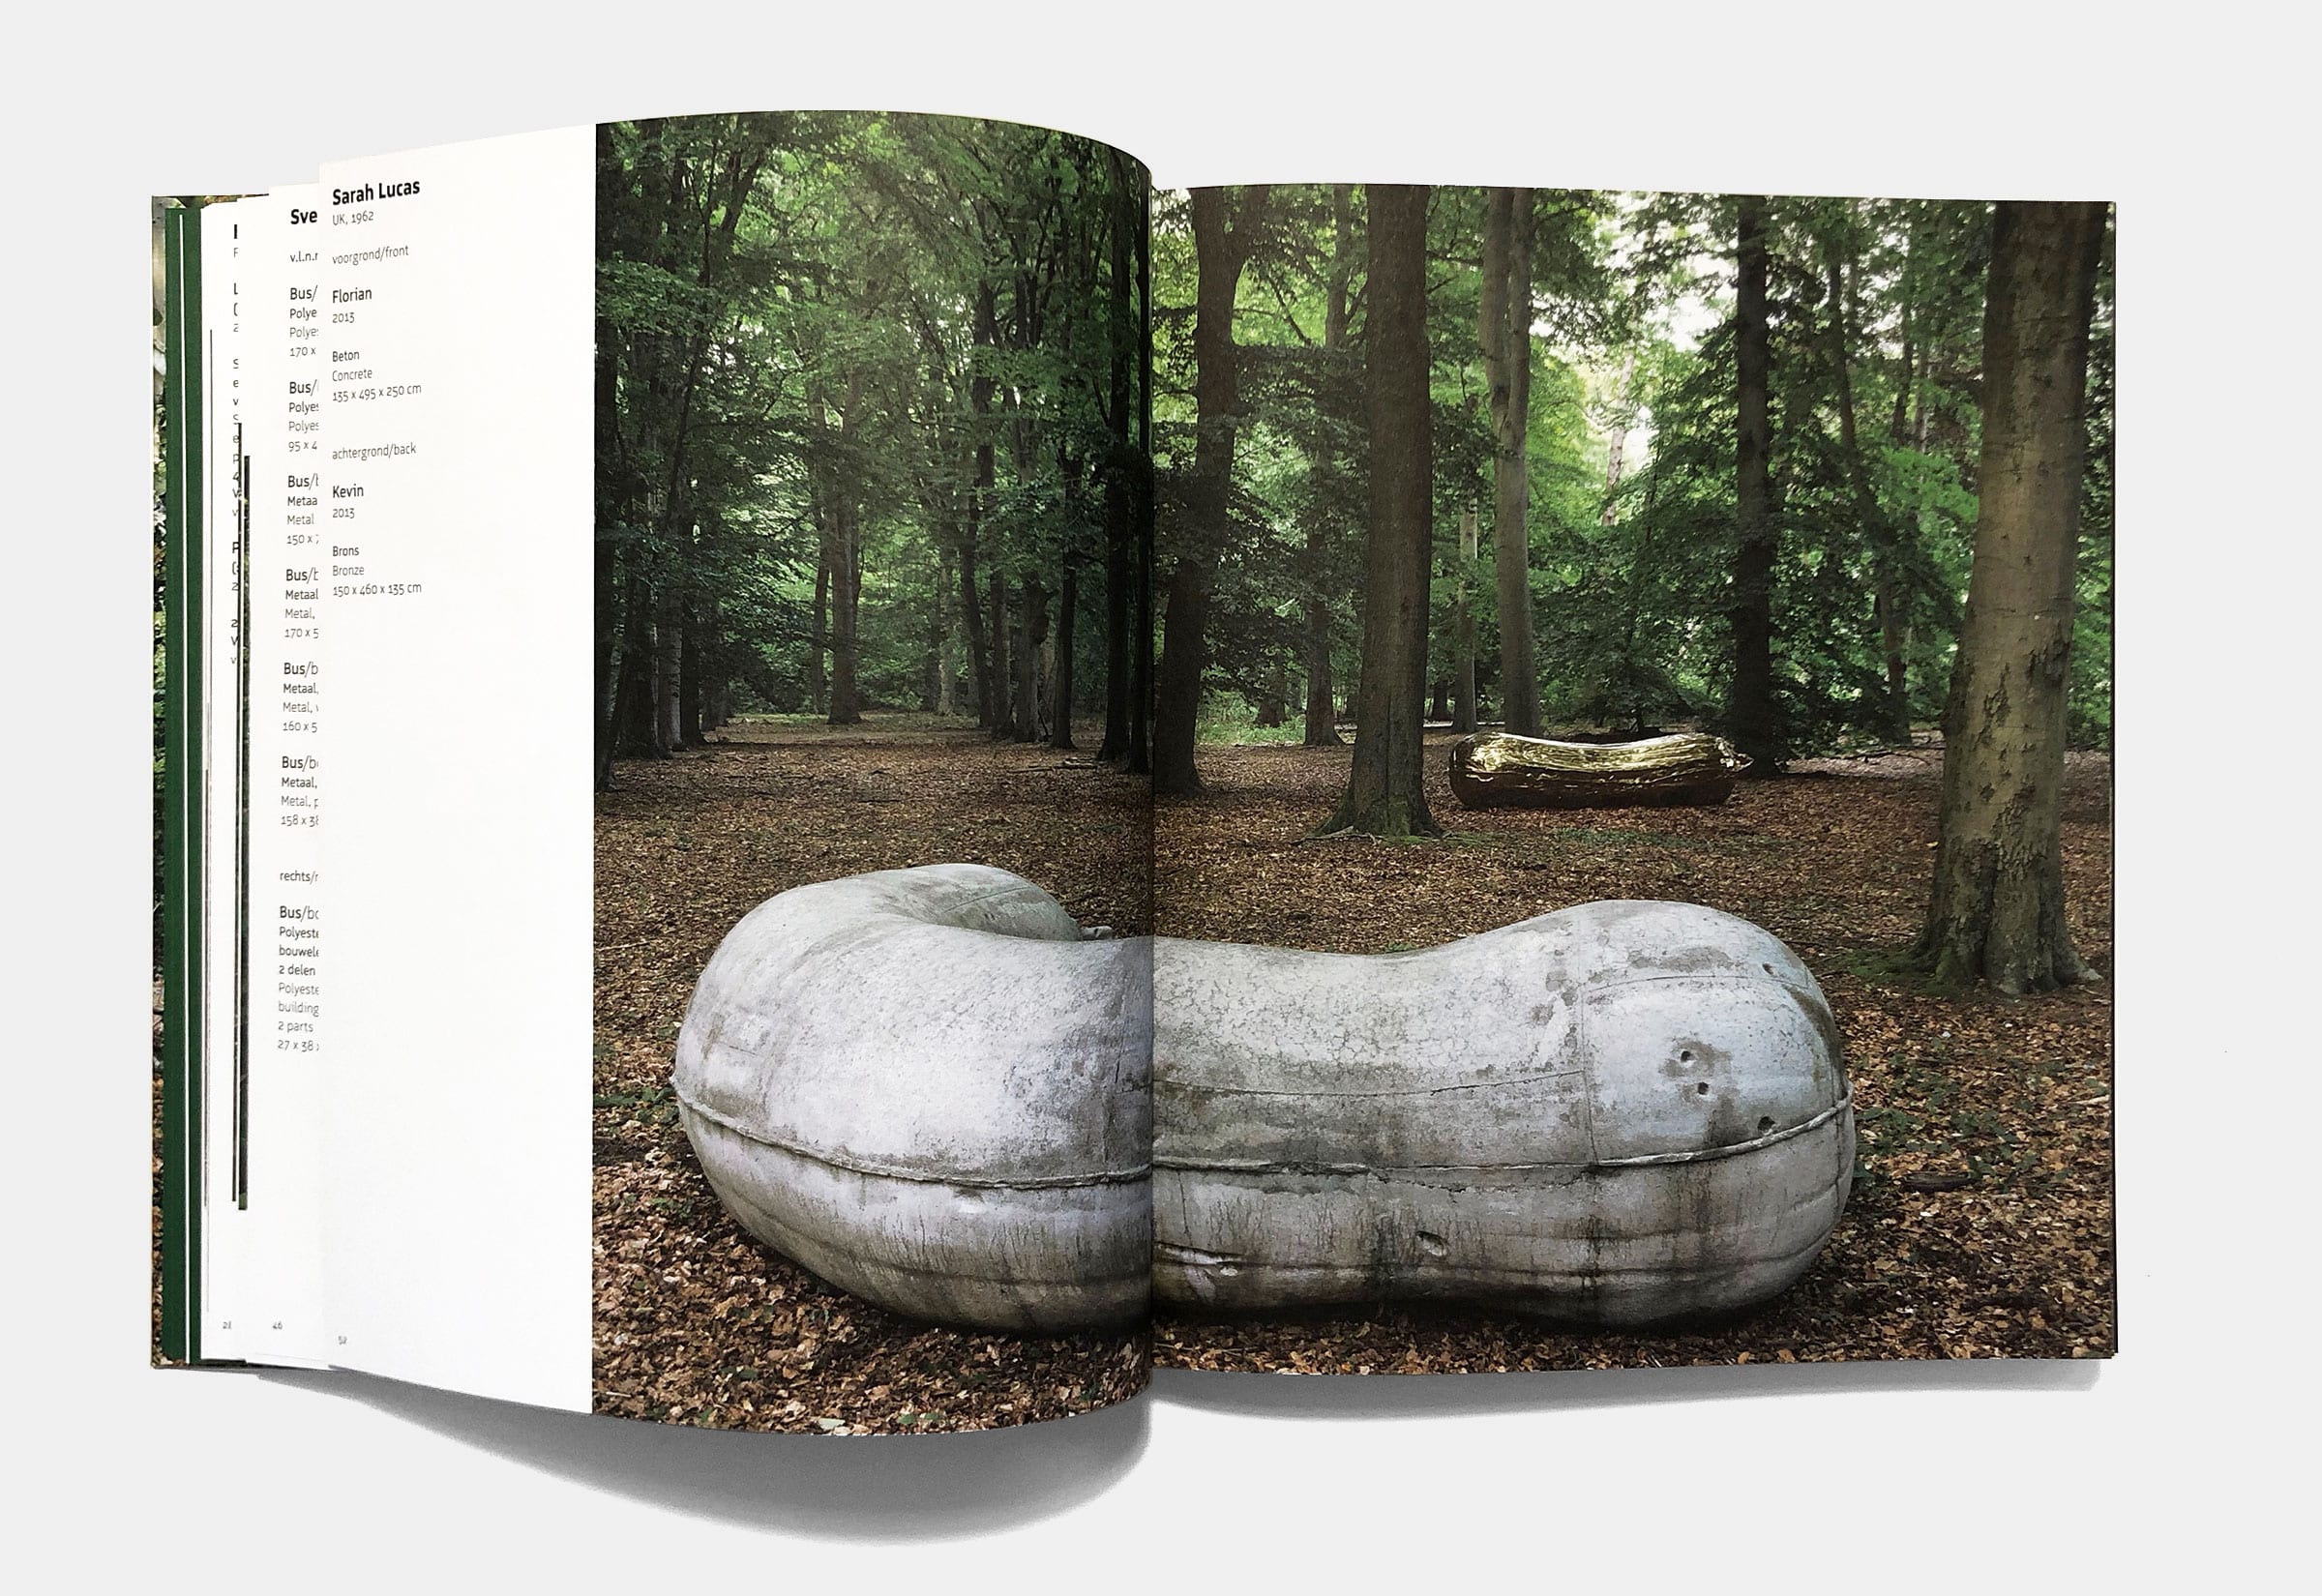 Gebr. Silvestri Lustwarande – ‘Delirious Lustwarande: Excursions in contemporary sculpture III’